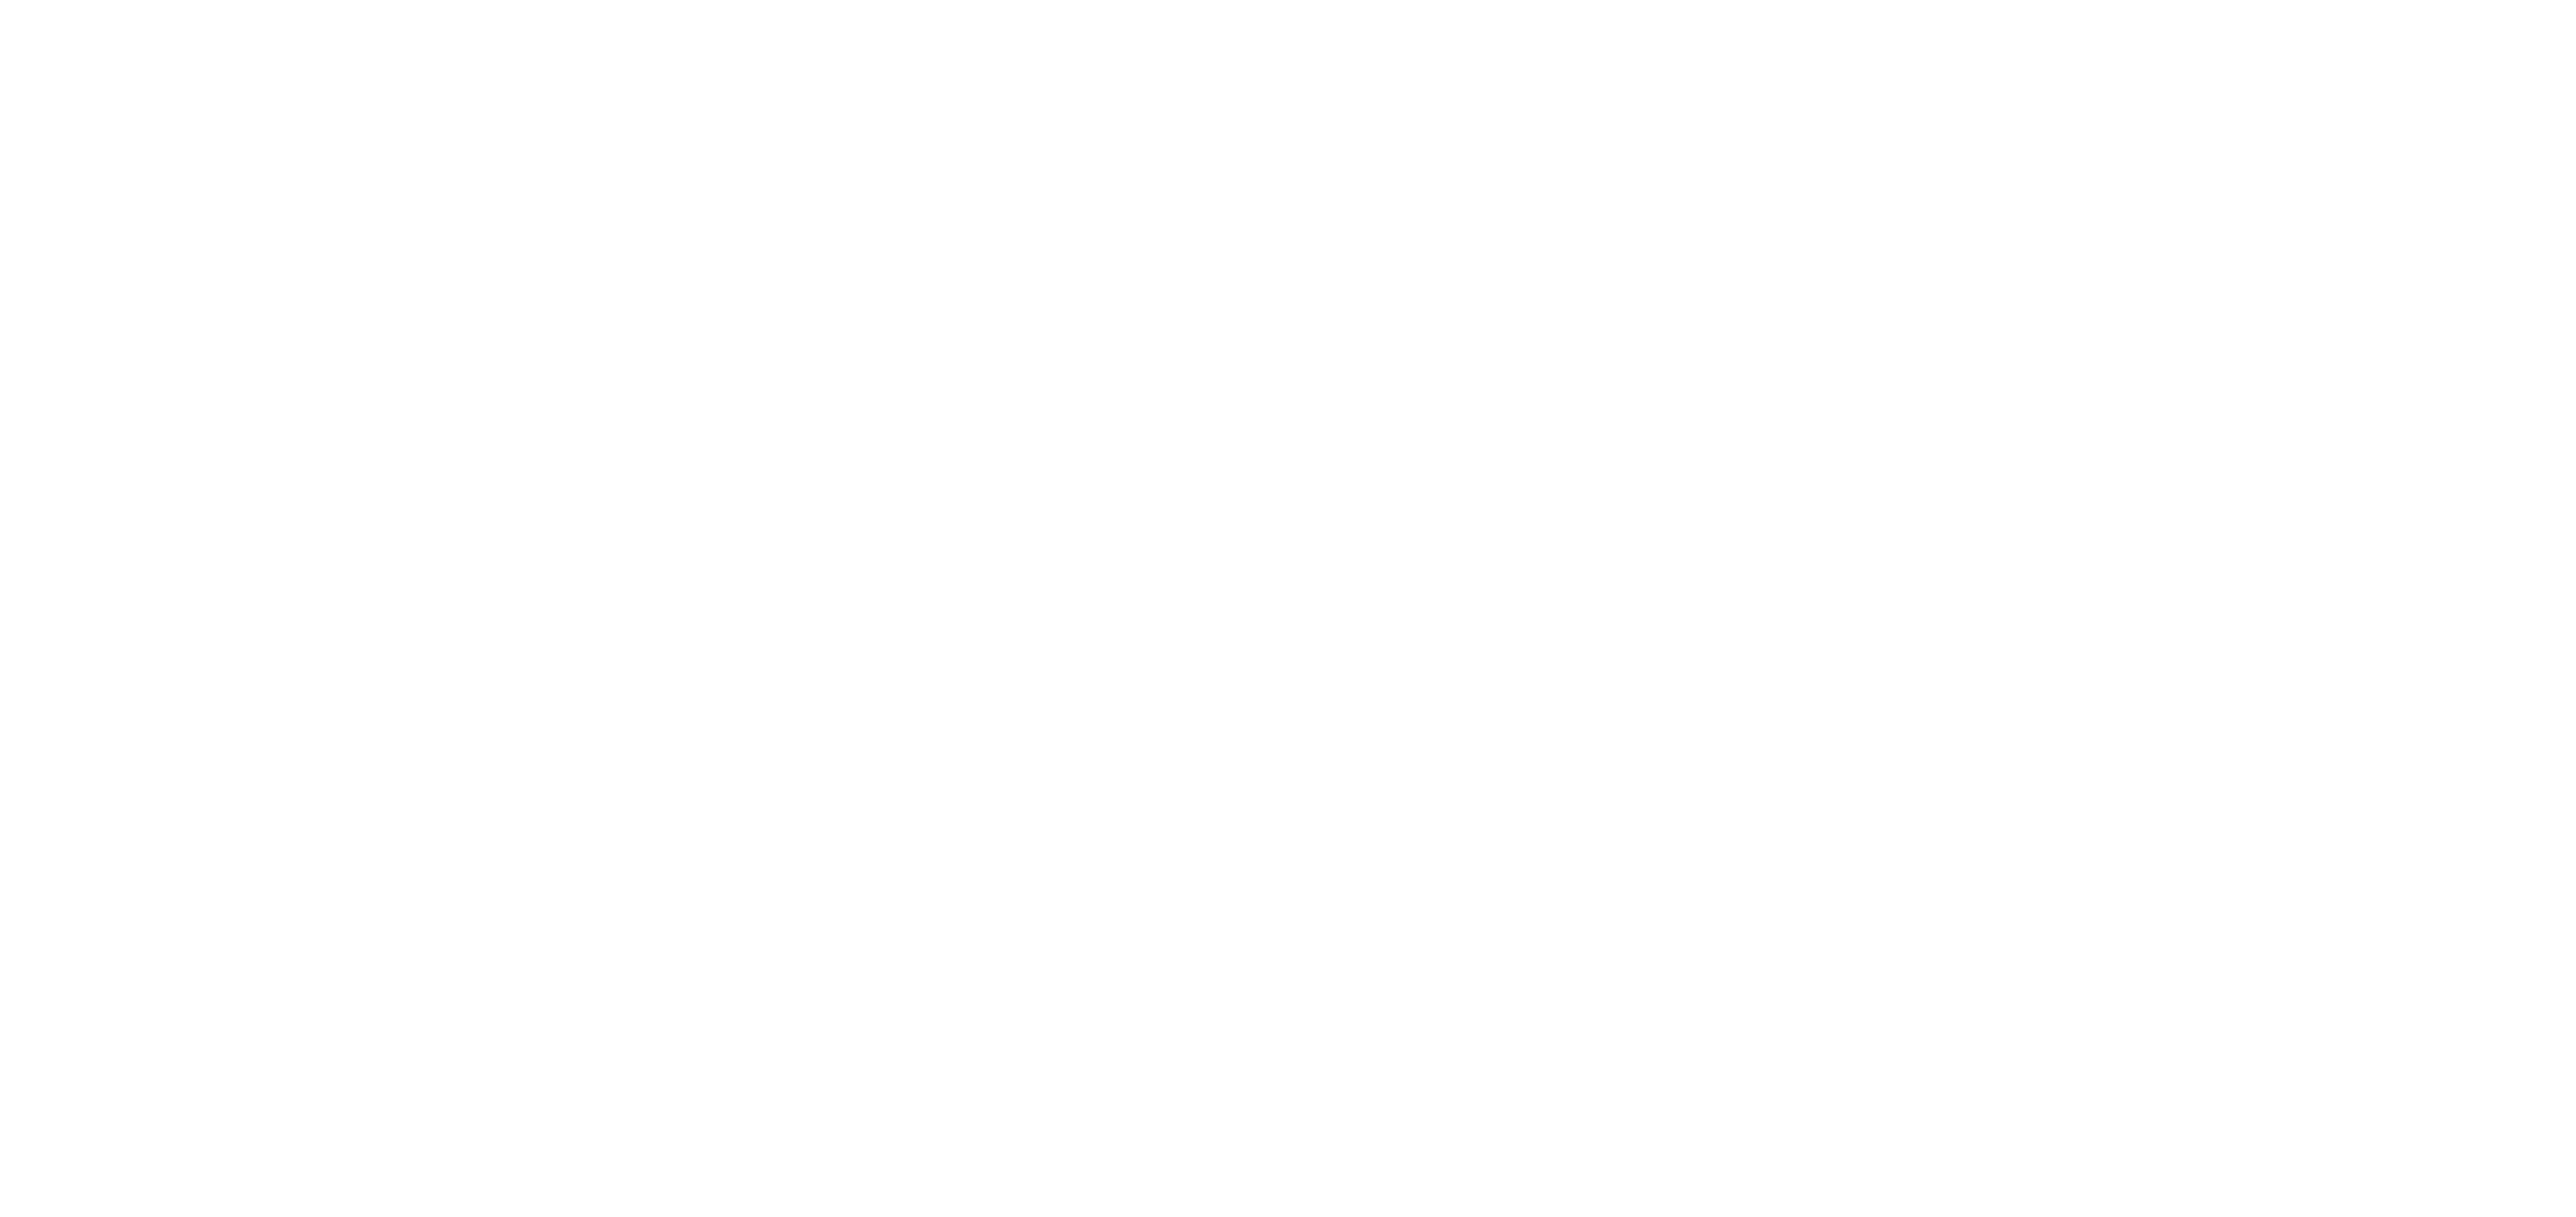 Centro de Conciliación Laboral Chihuahua